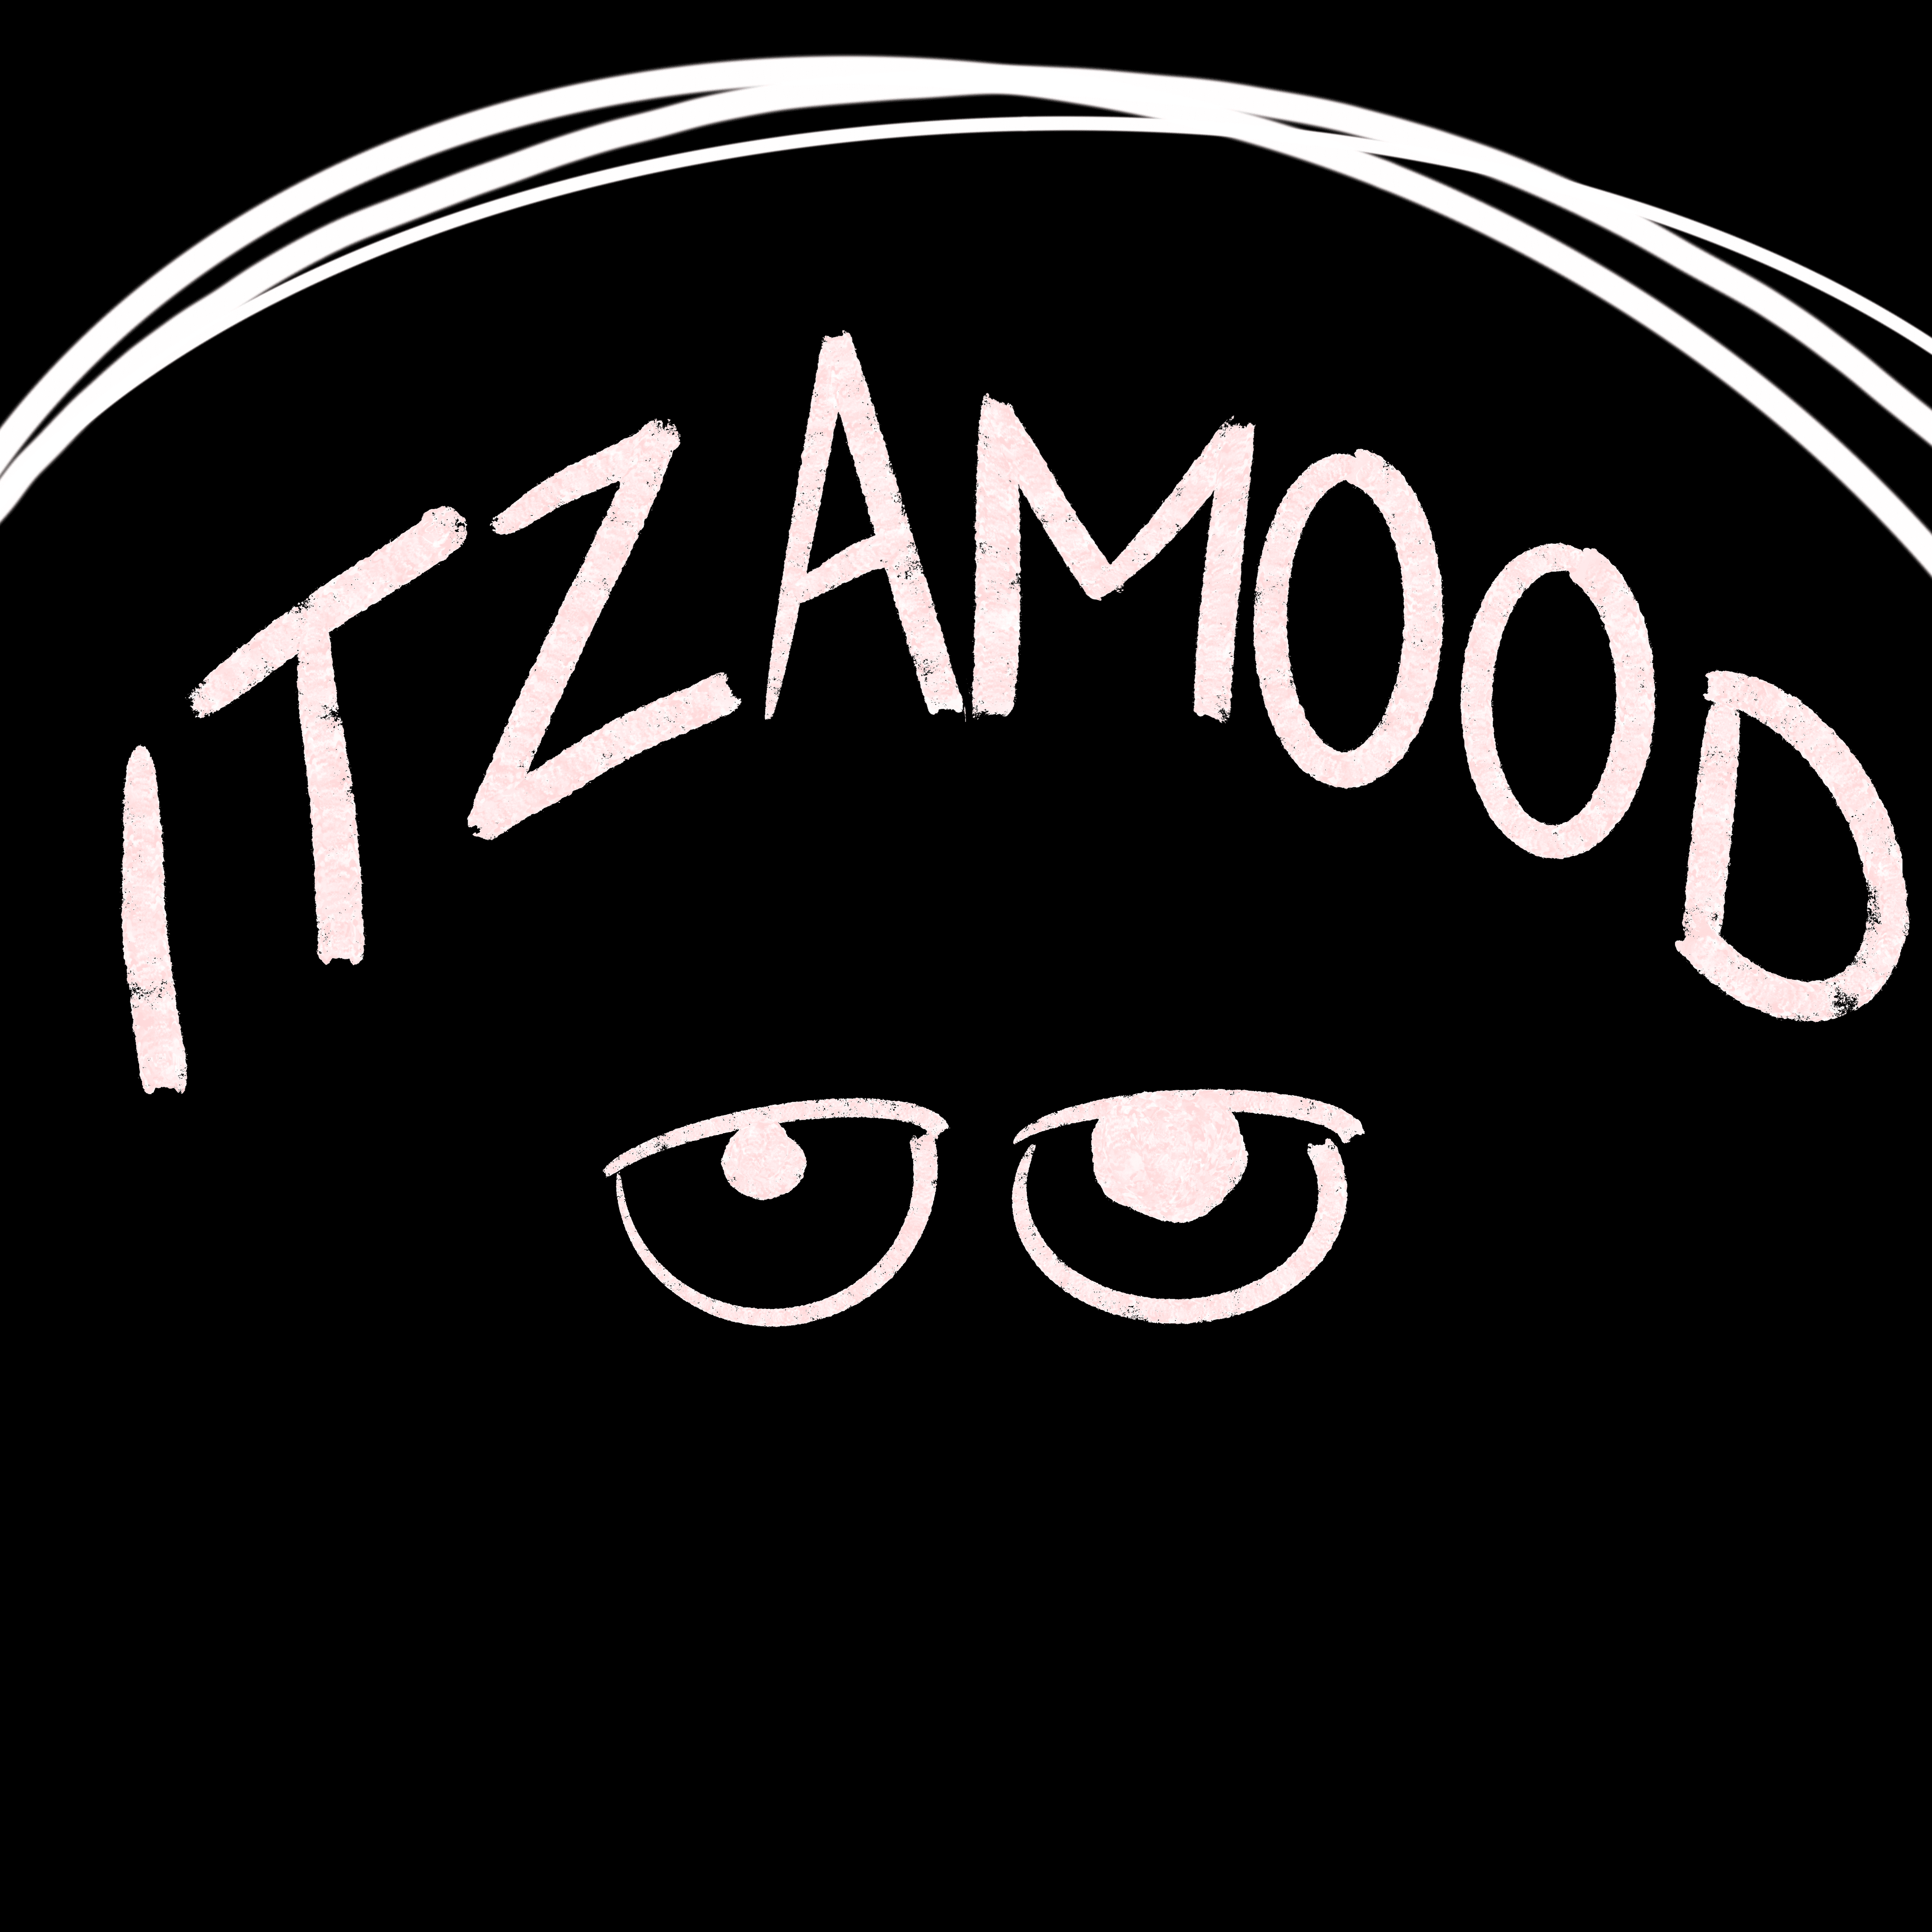 itzam00d